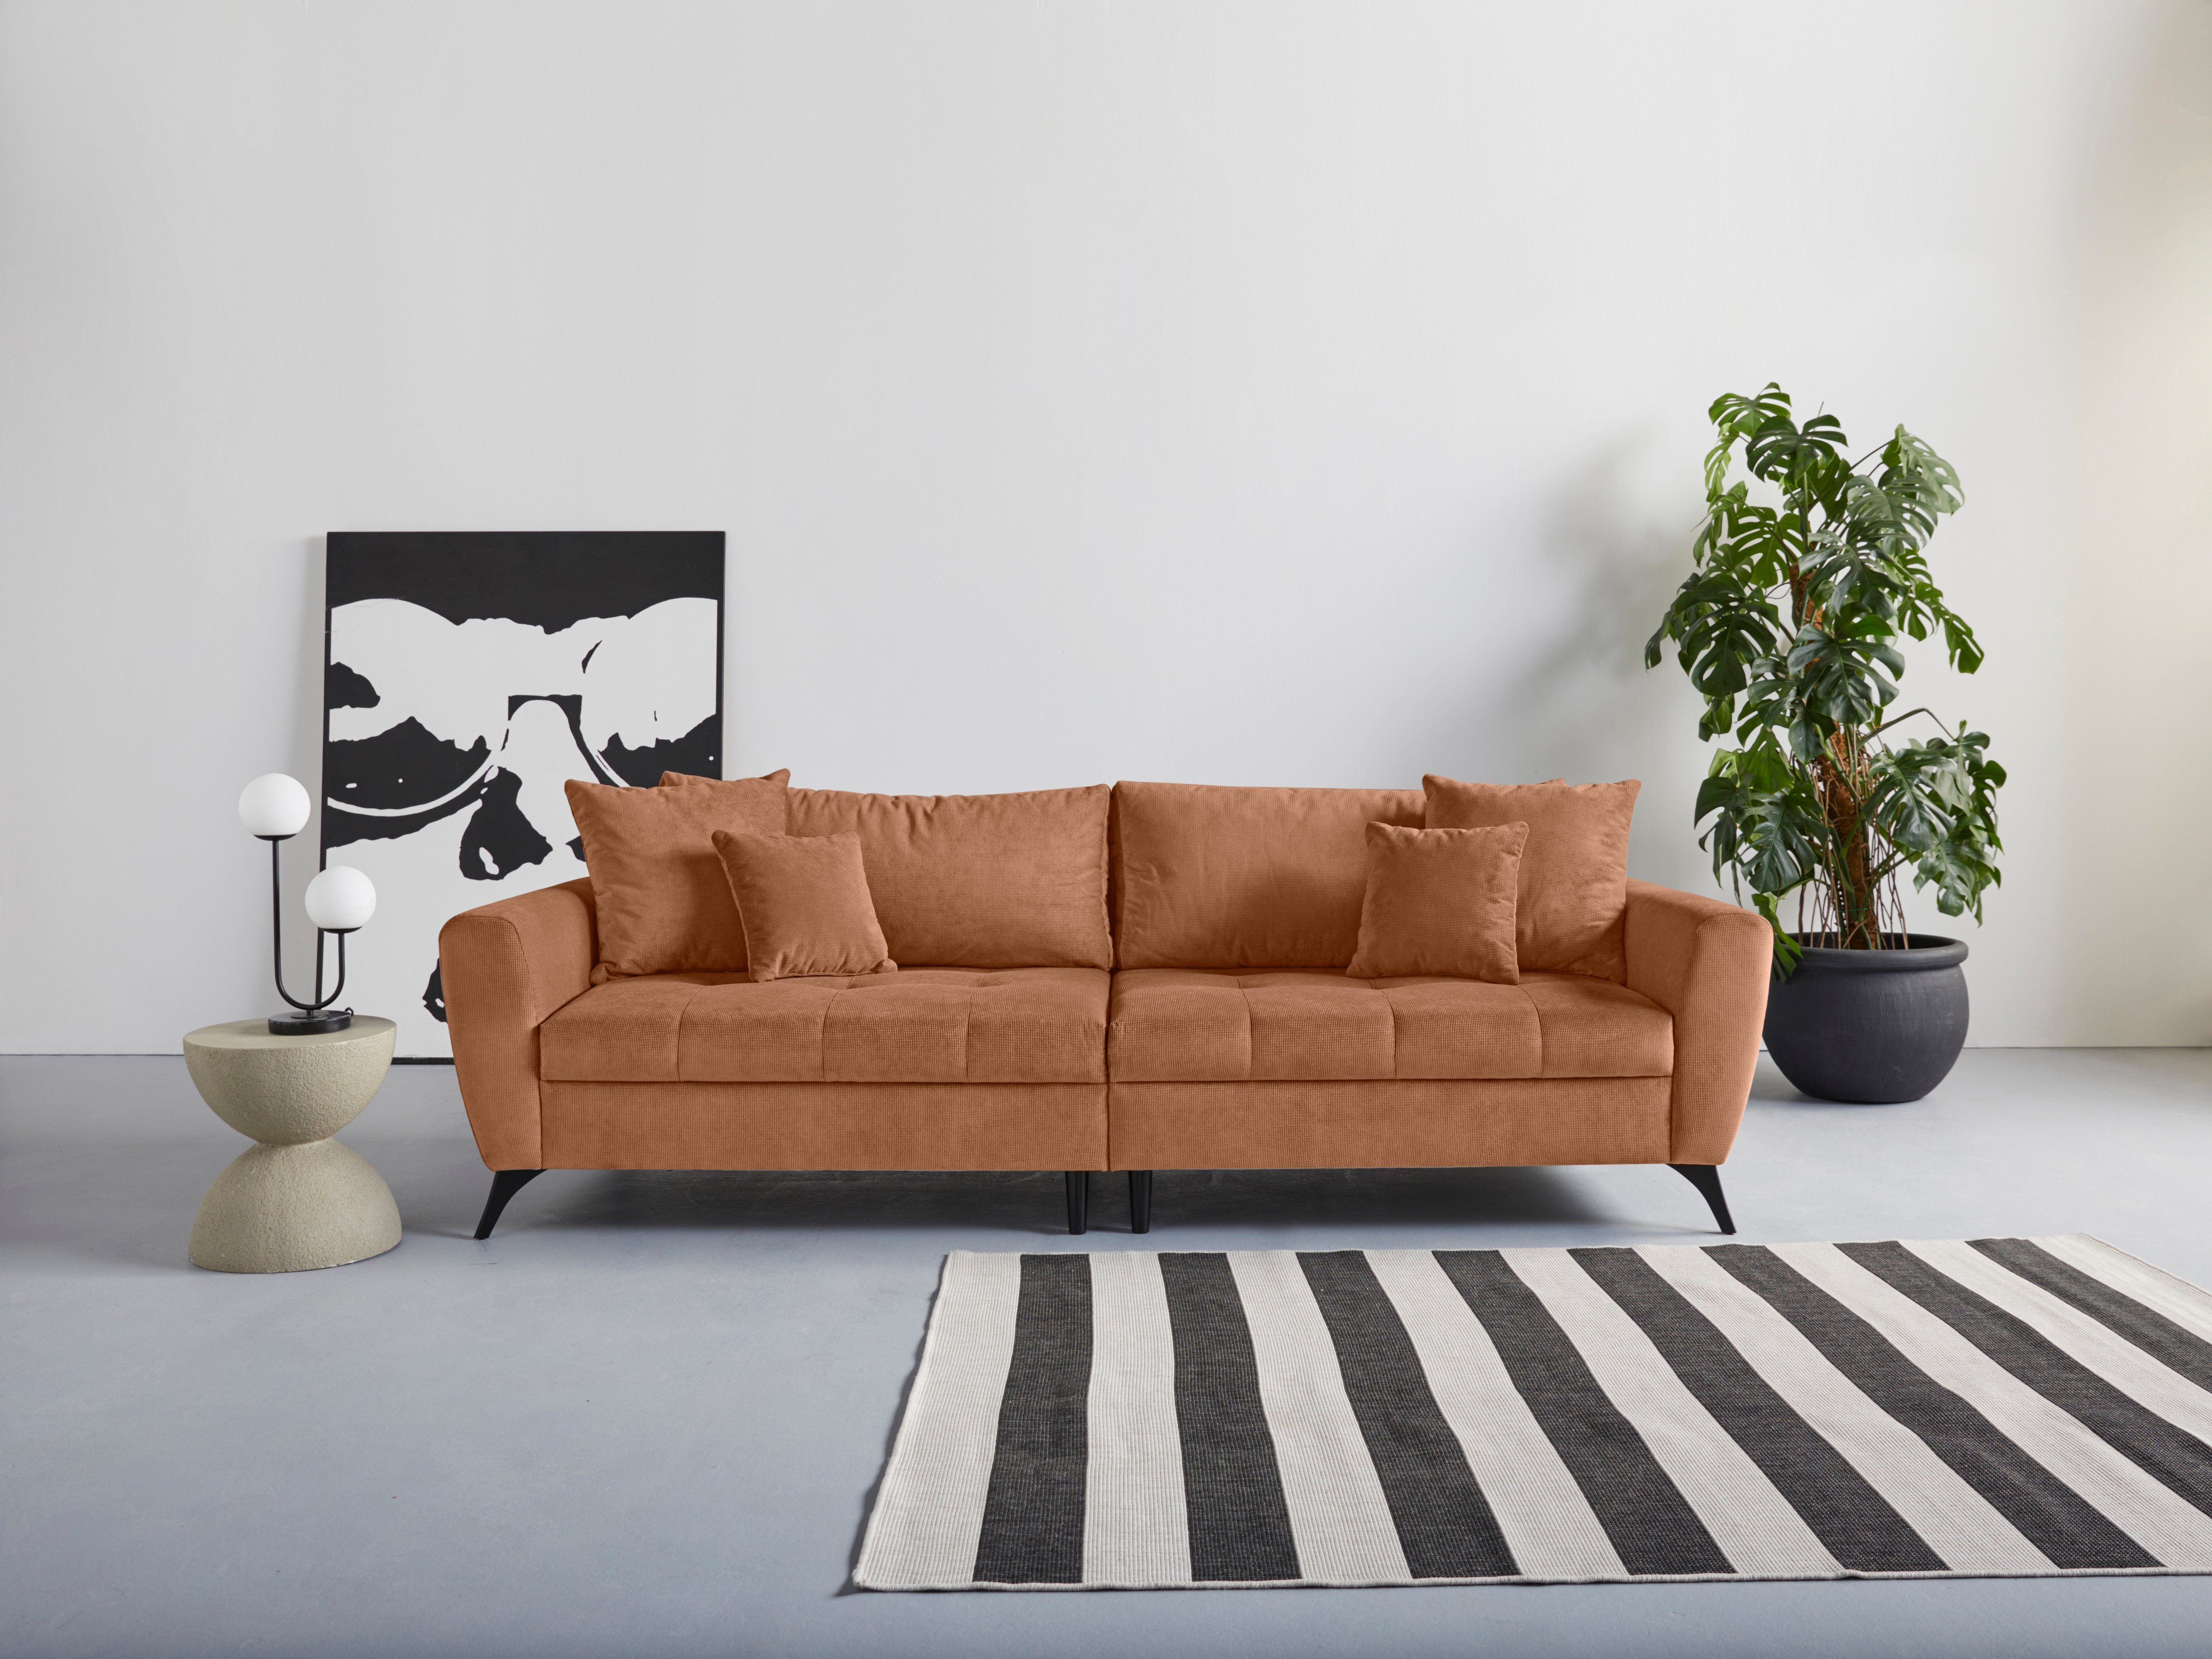 INOSIGN Big-Sofa Lörby, Belastbarkeit bis 140kg pro Sitzplatz, auch mit Aqua clean-Bezug